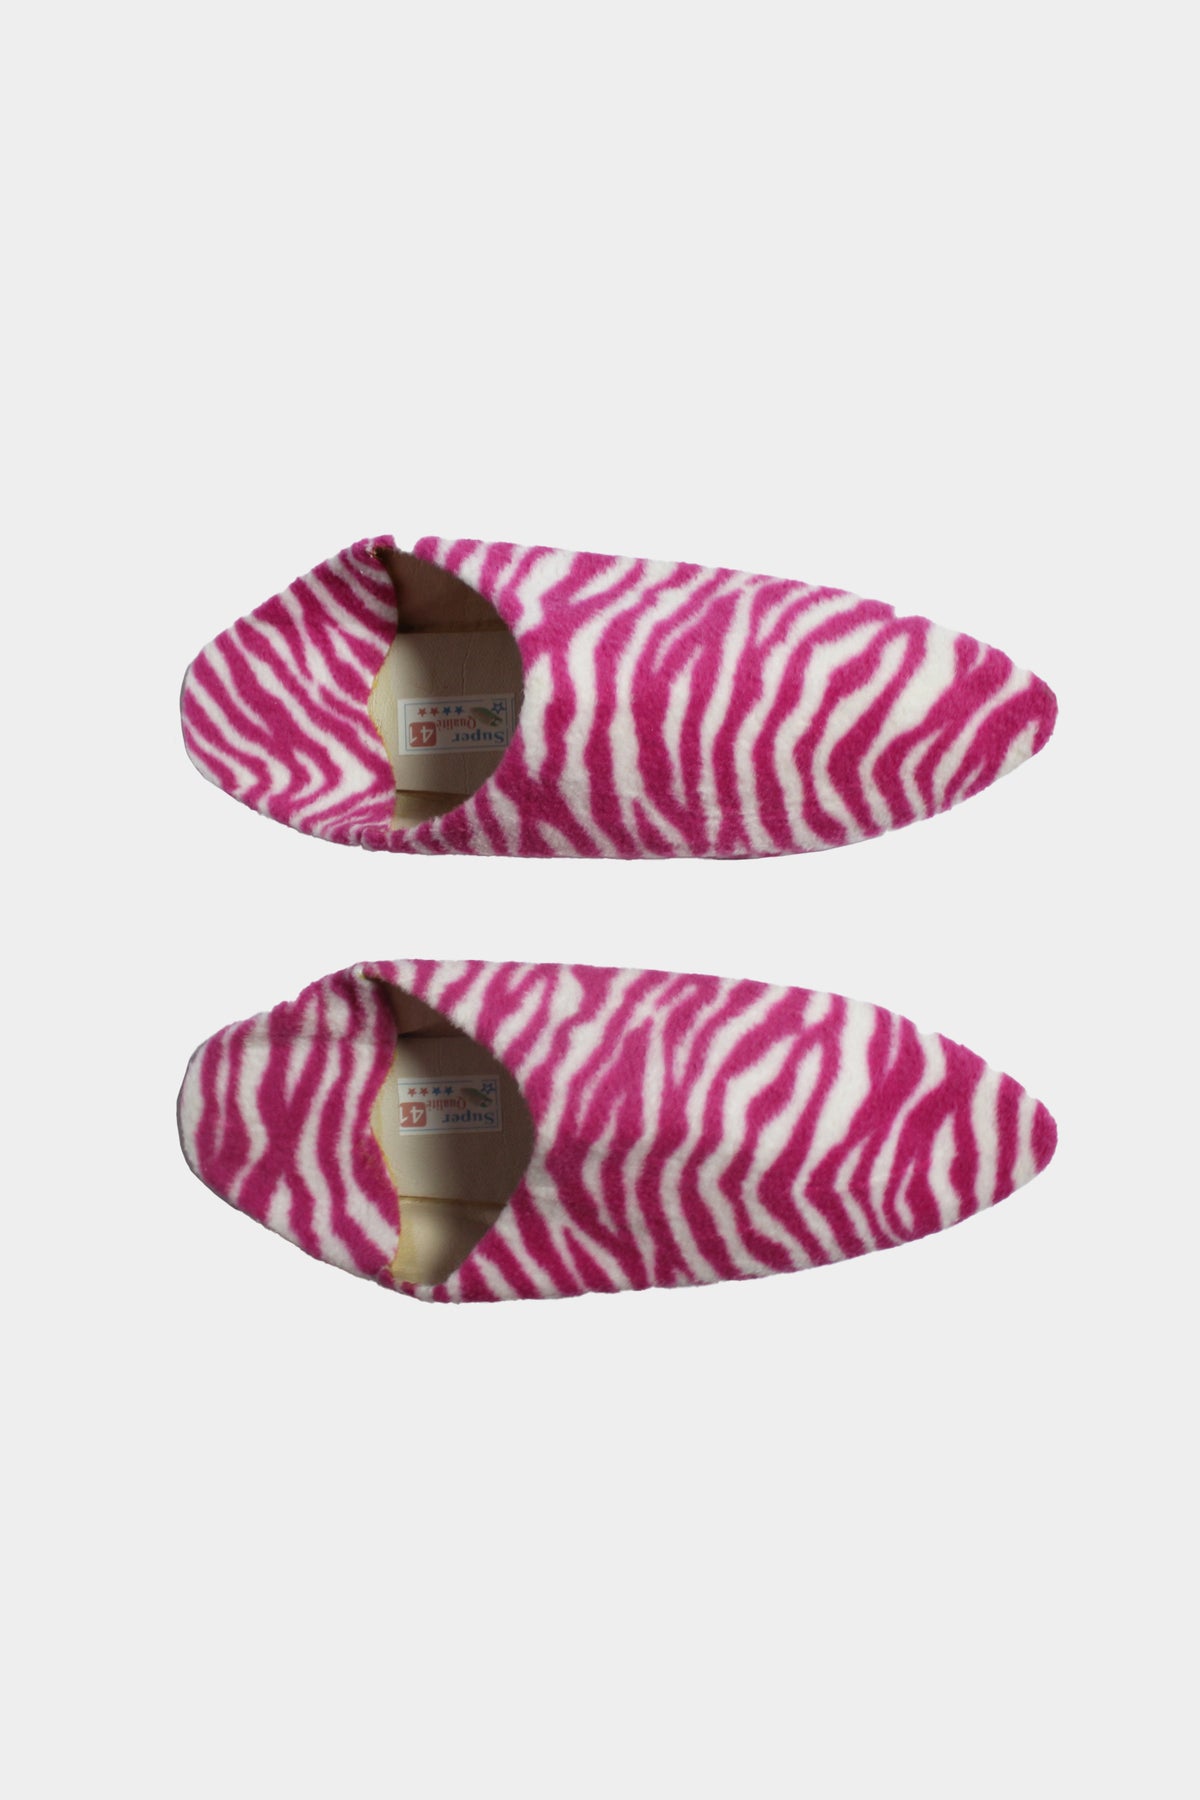 ZEBRA Babouches - Pink (Duvet)